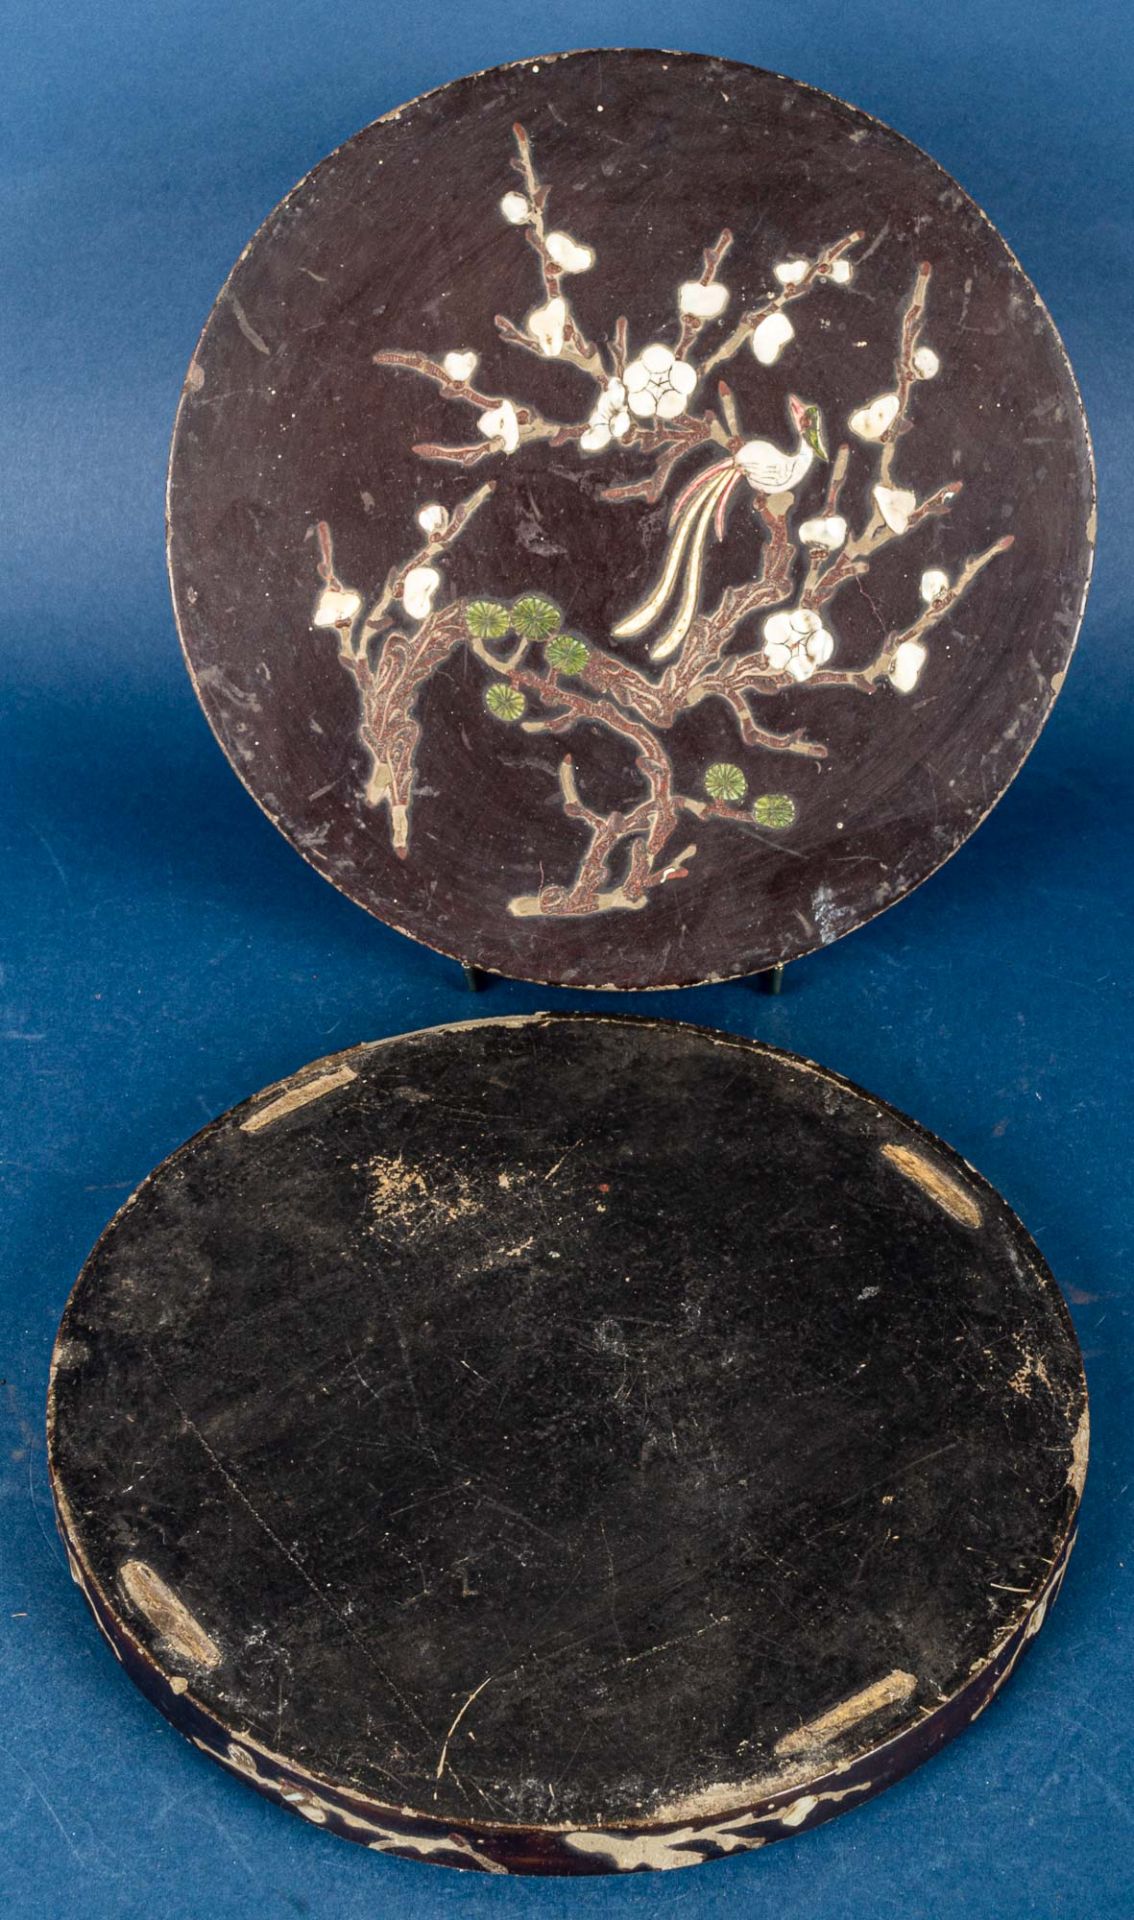 Rundes Vorspeisenset in schwarzem Lackkasten, China Qing - Dynastie, Anfang 20. Jhdt., Durchmesser  - Bild 5 aus 8